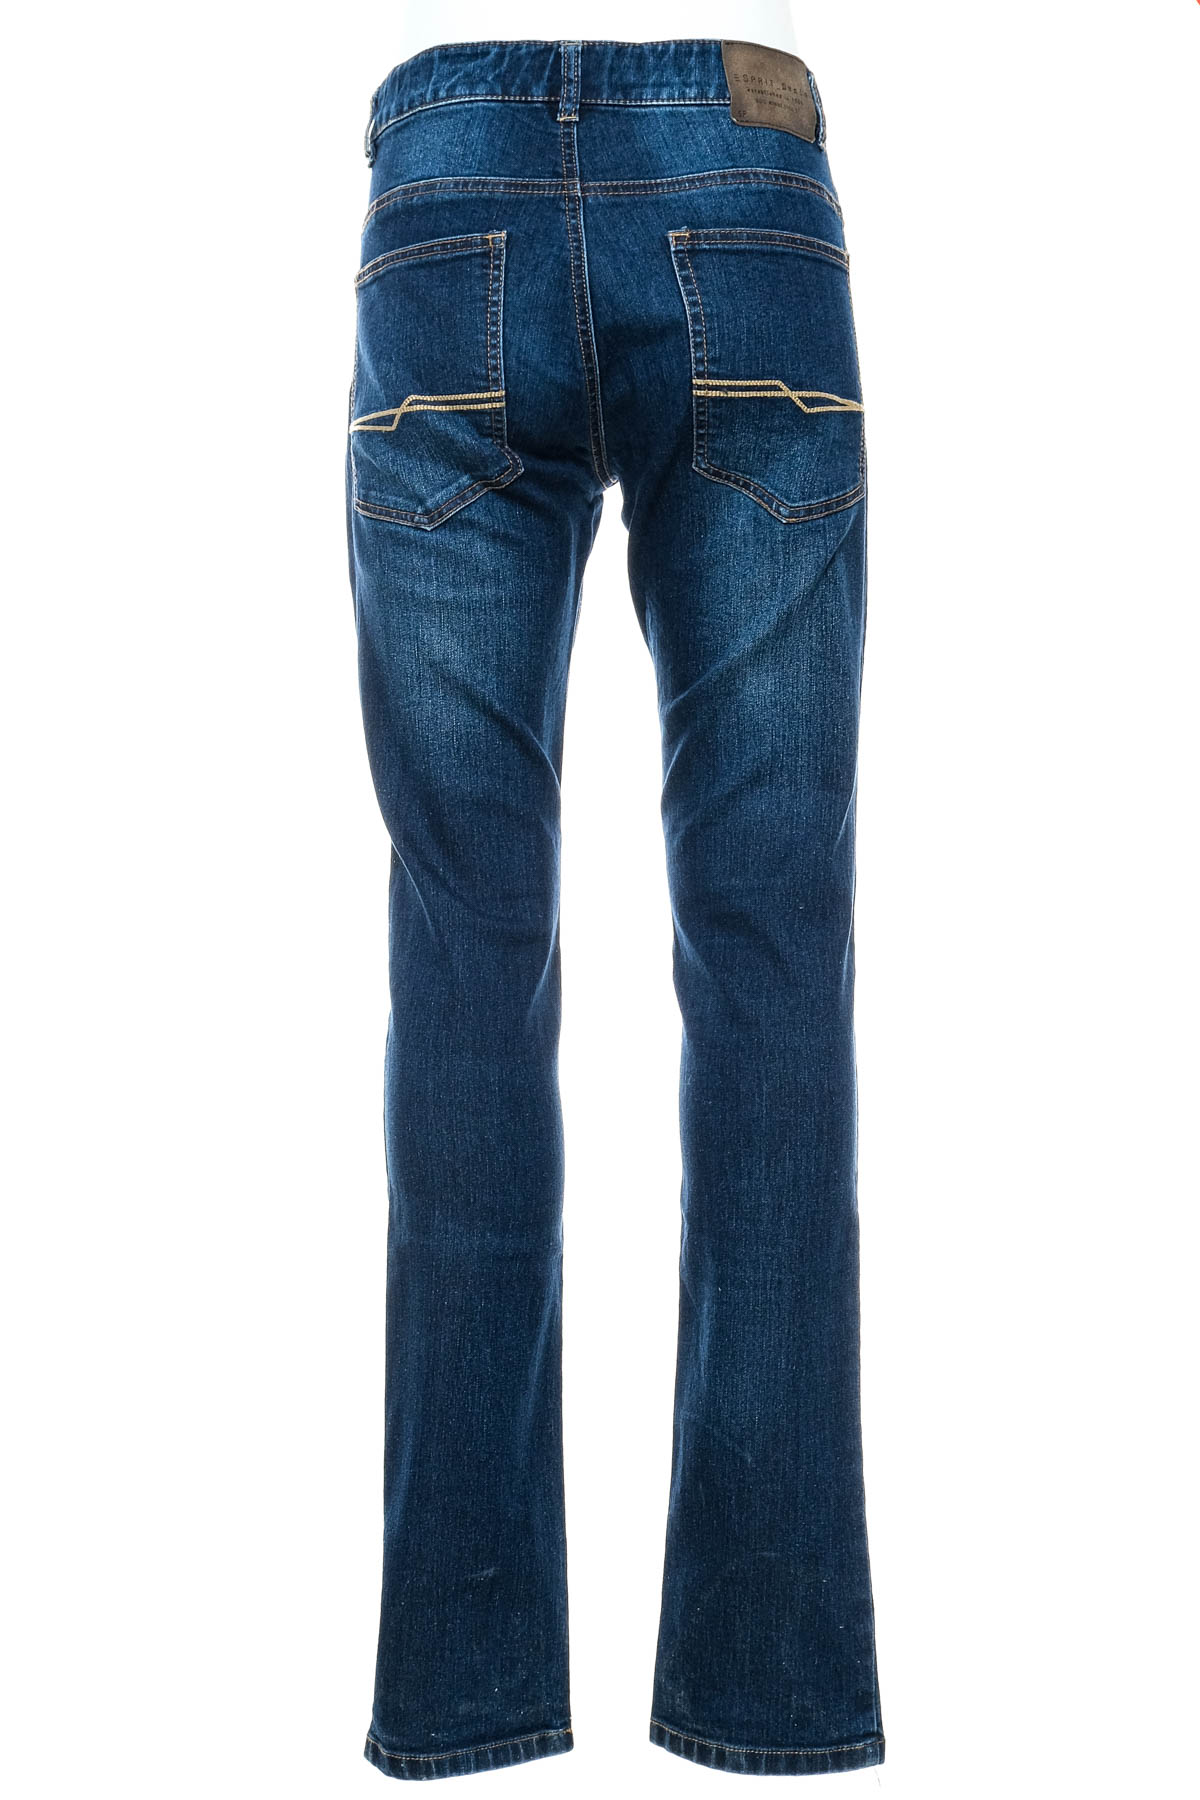 Boy jeans - ESPRIT - 1